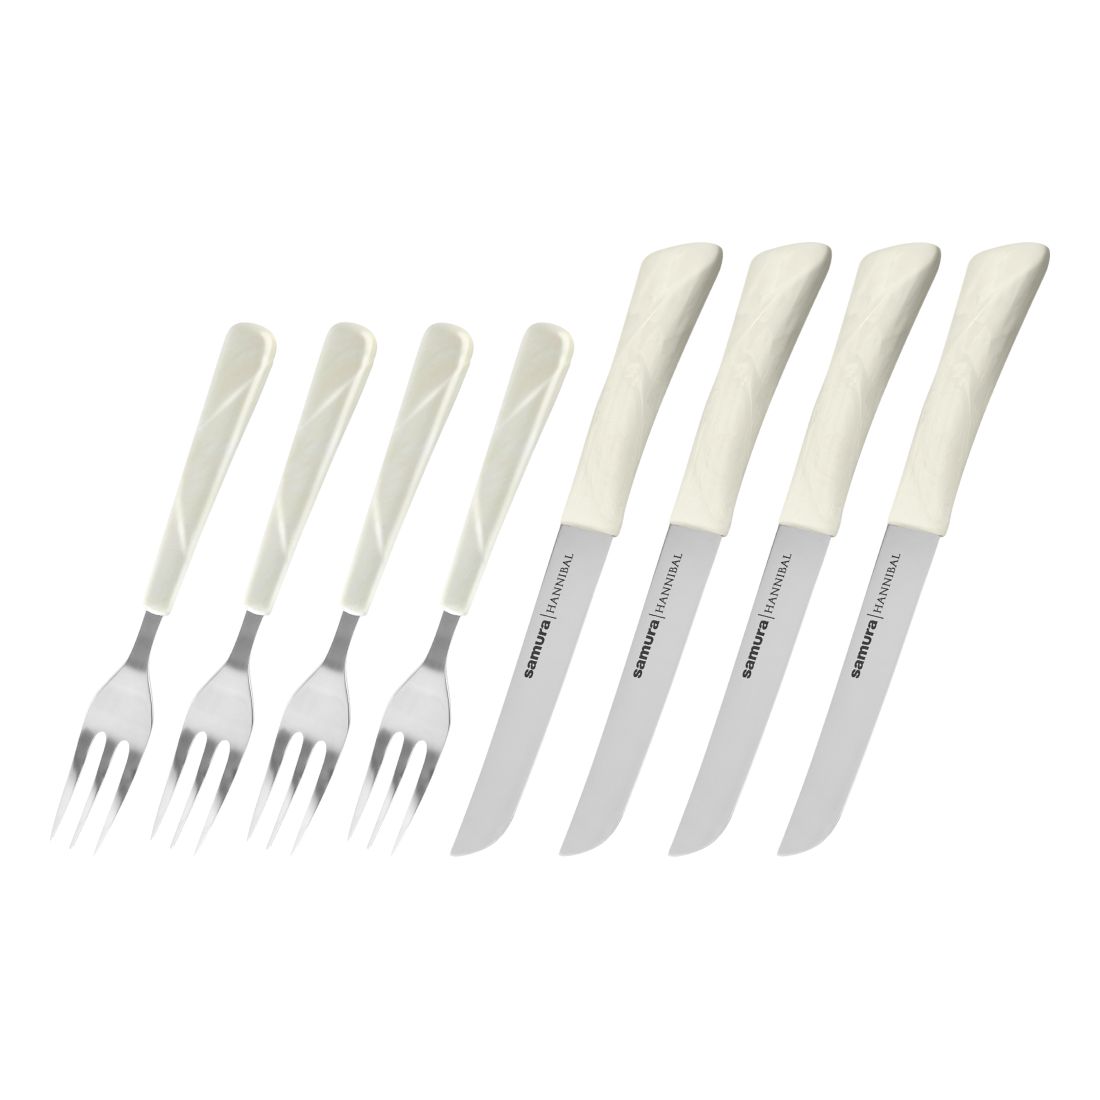 Samura Hannibal Kitchen Steak Knives And Forks (Set Of 4) - White Handle